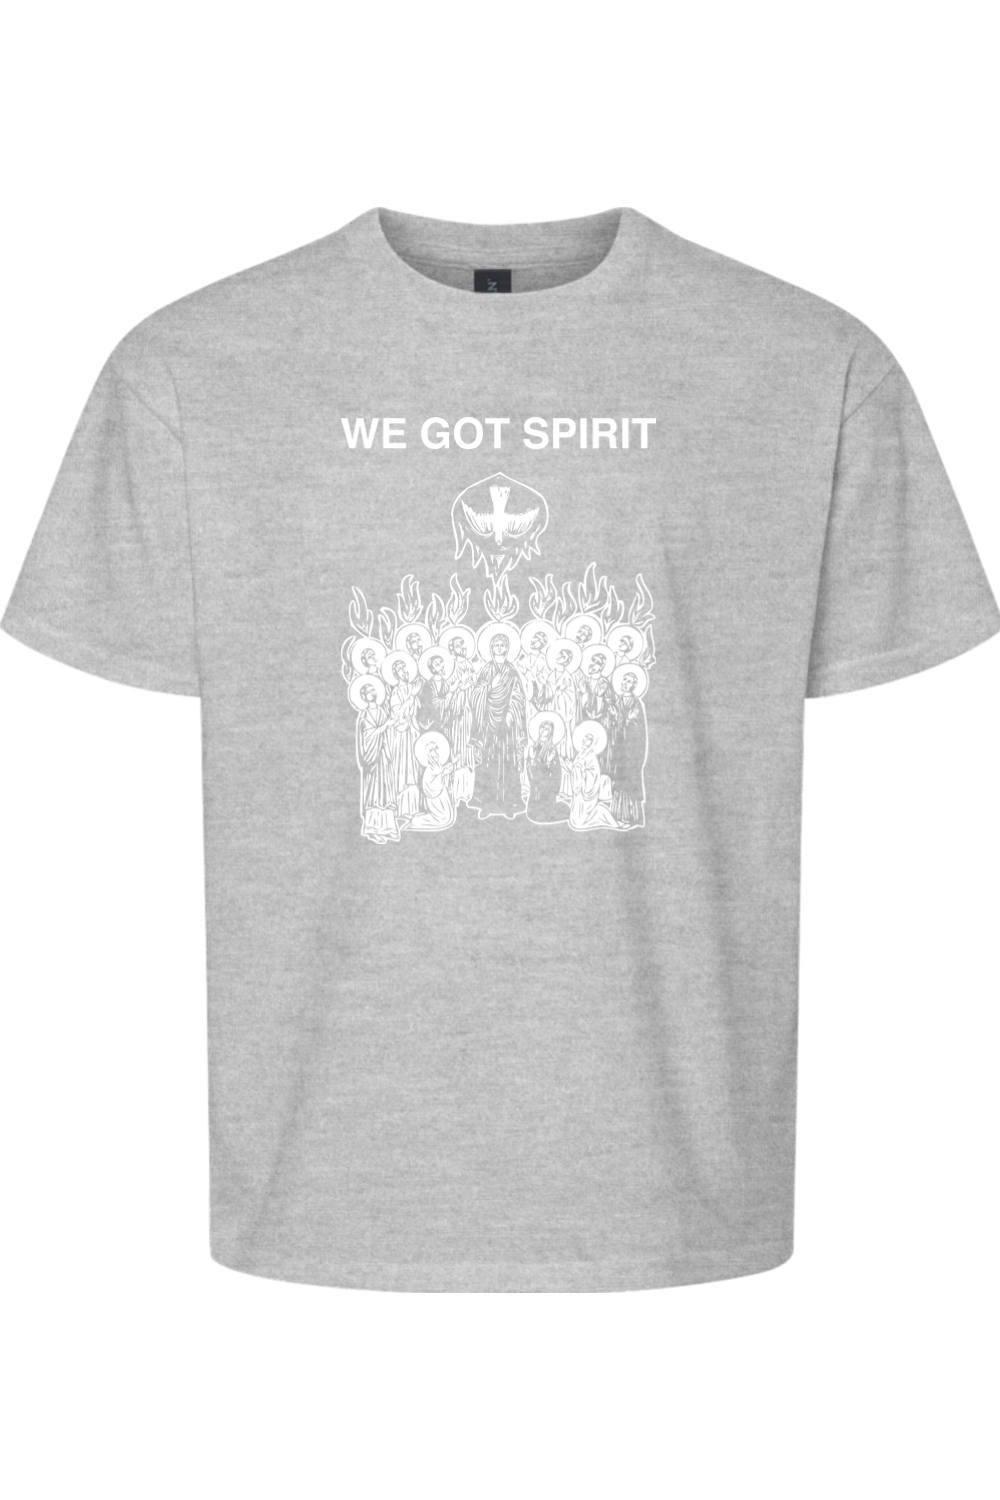 We Got Spirit - Pentecost Youth T-Shirt